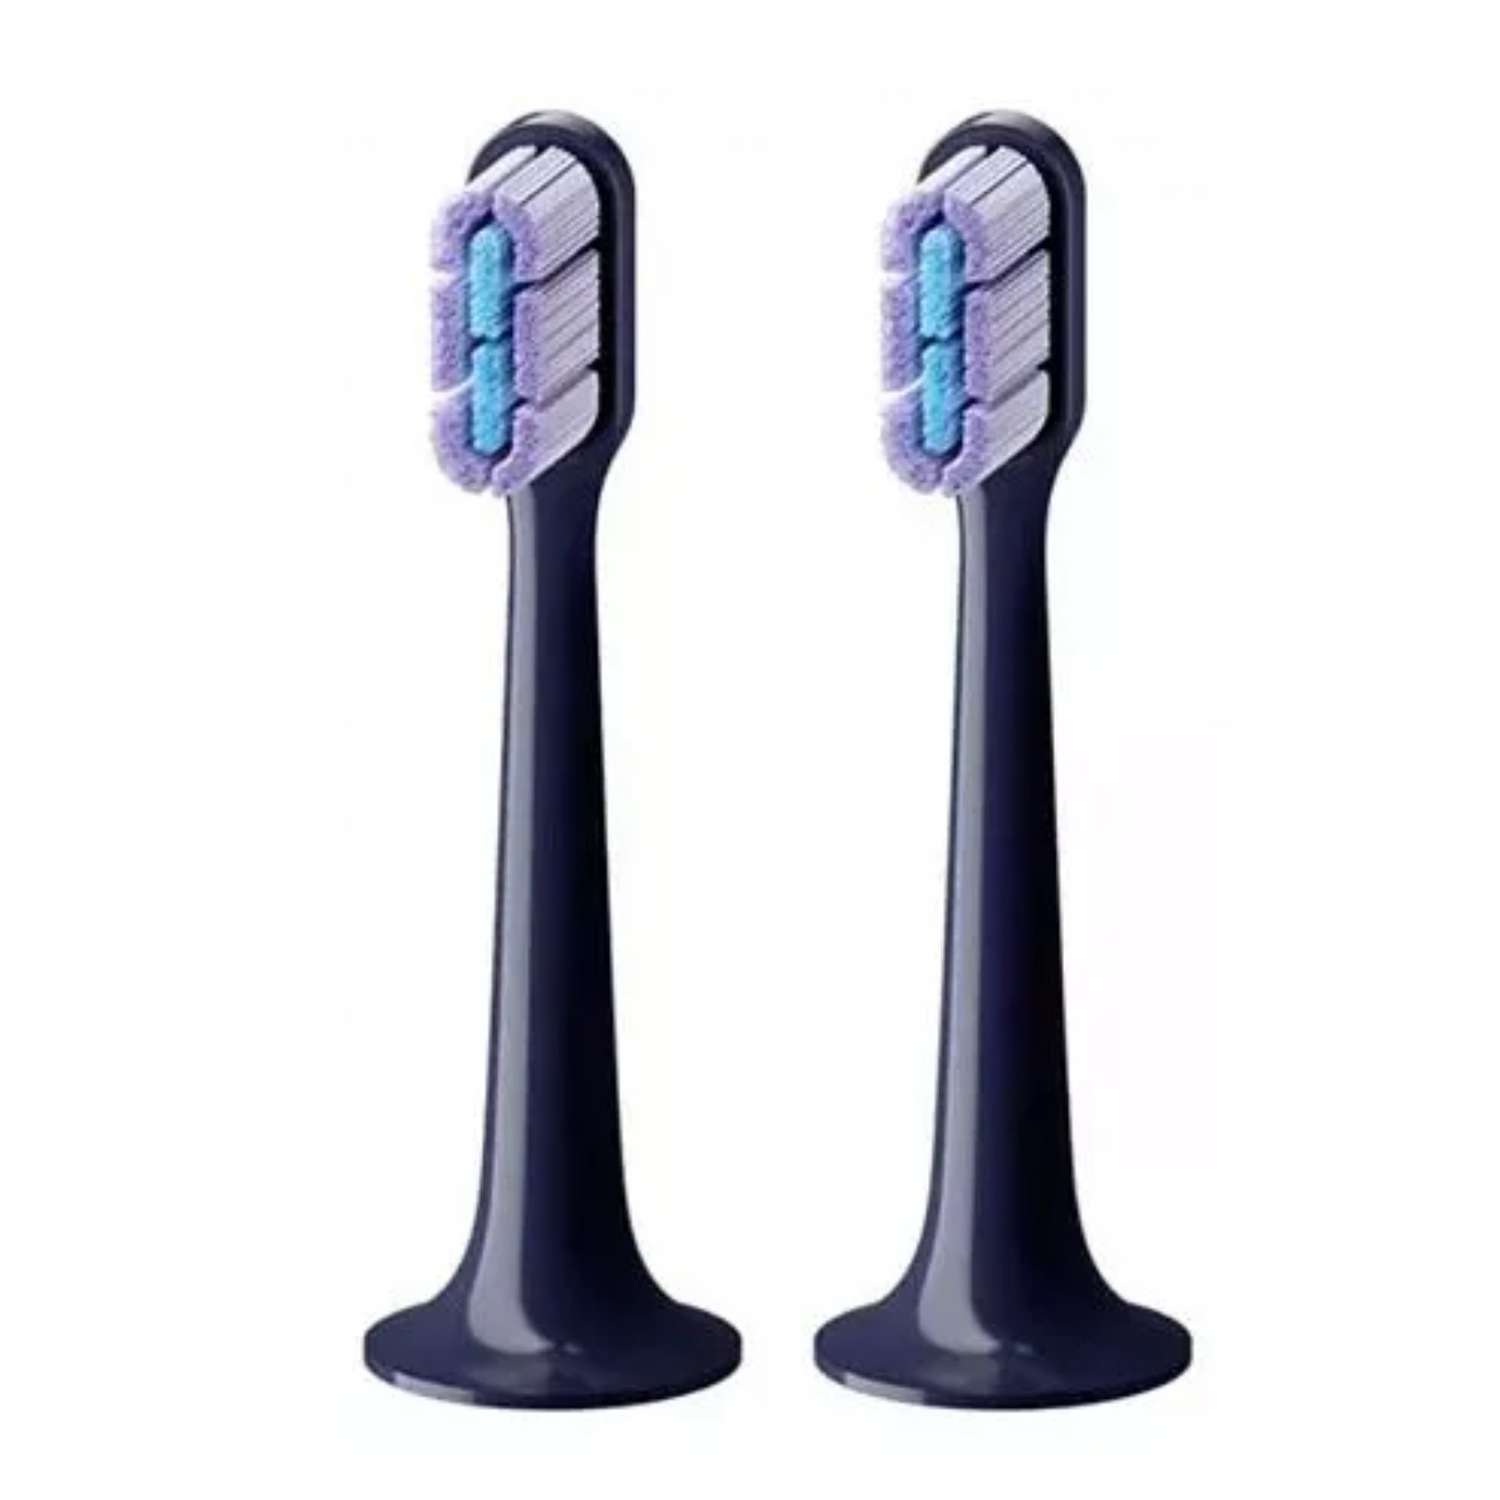 Электрическая XIAOMI зубная щетка Electric Toothbrush T700. звуковая 39600 пульс/мин чёрная - фото 2